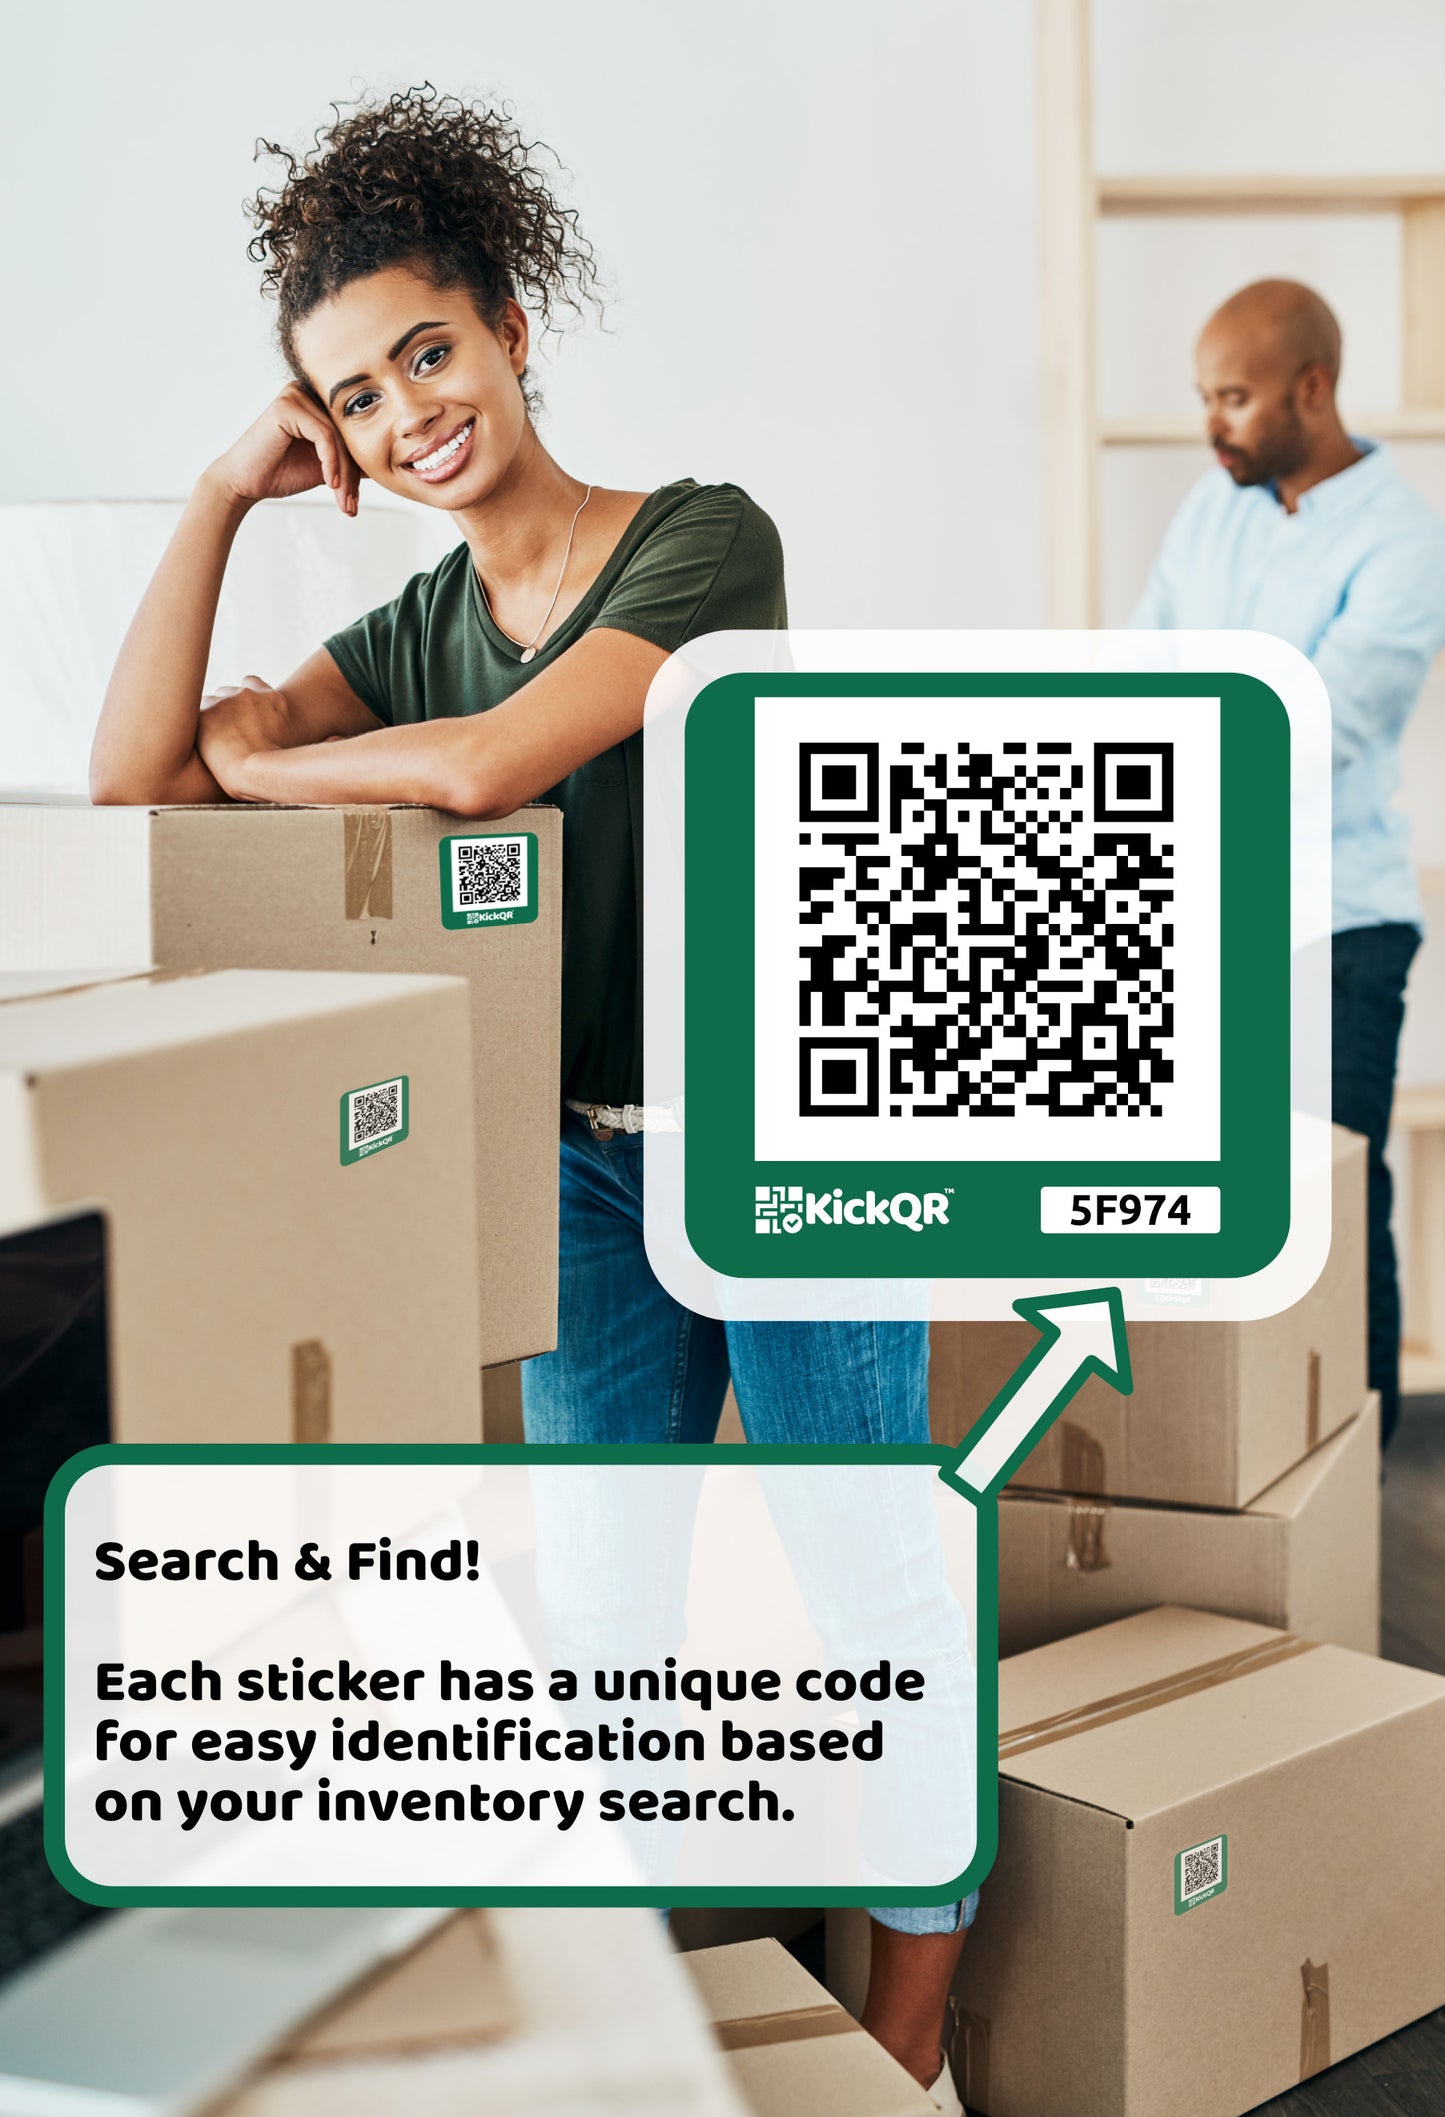 KickQR - OrganizerQR Sticker Pack - Smart QR Codes for Box & Bin Storage - 20 pack